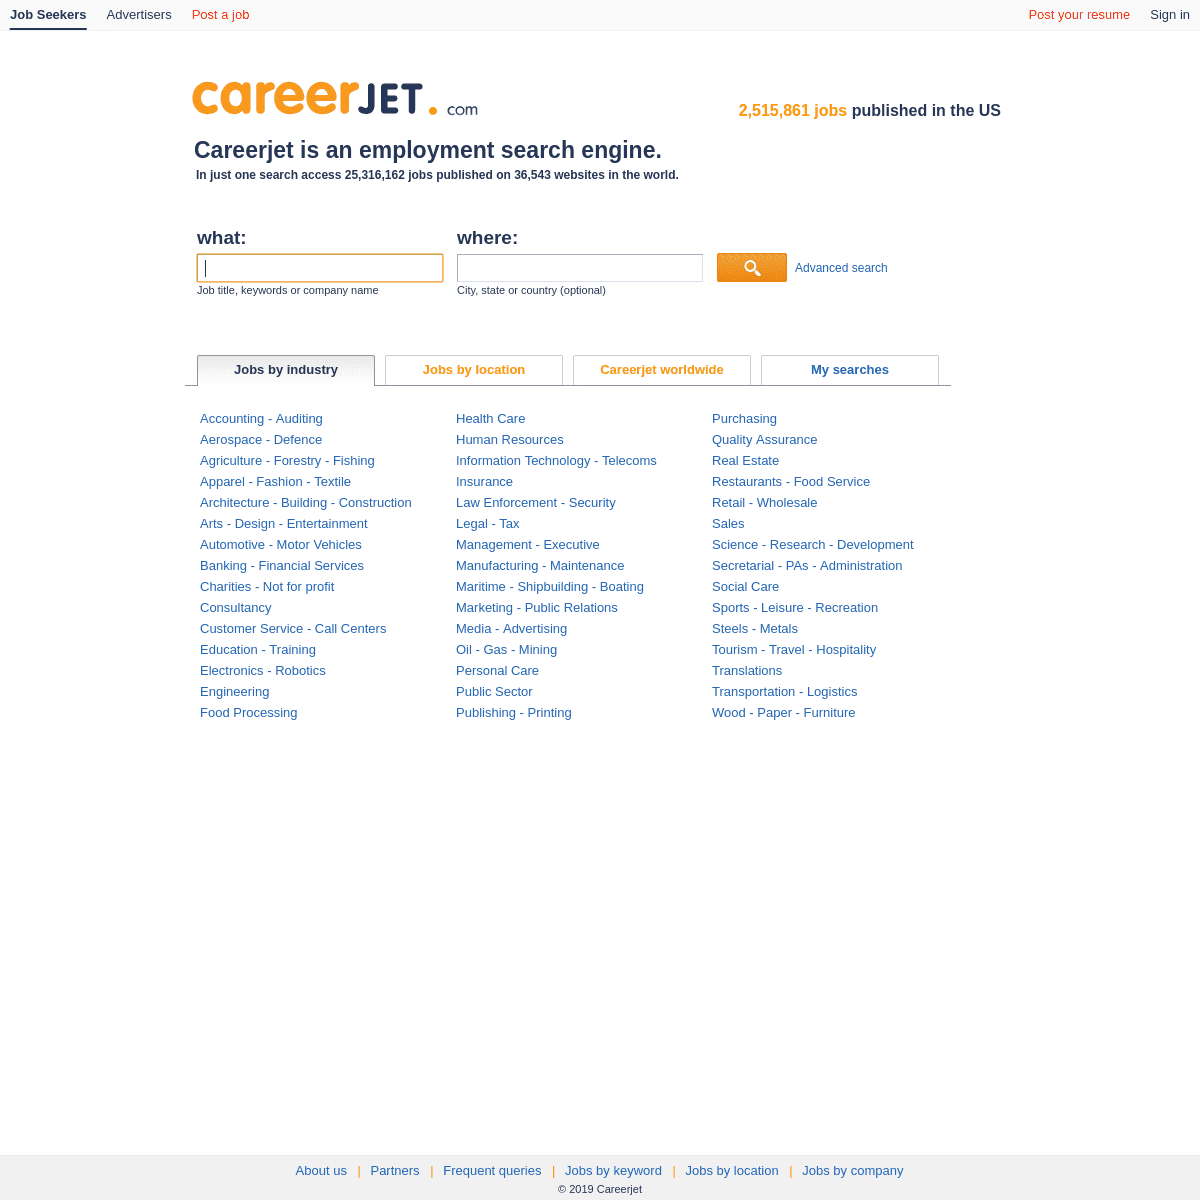 A complete backup of careerjet.com